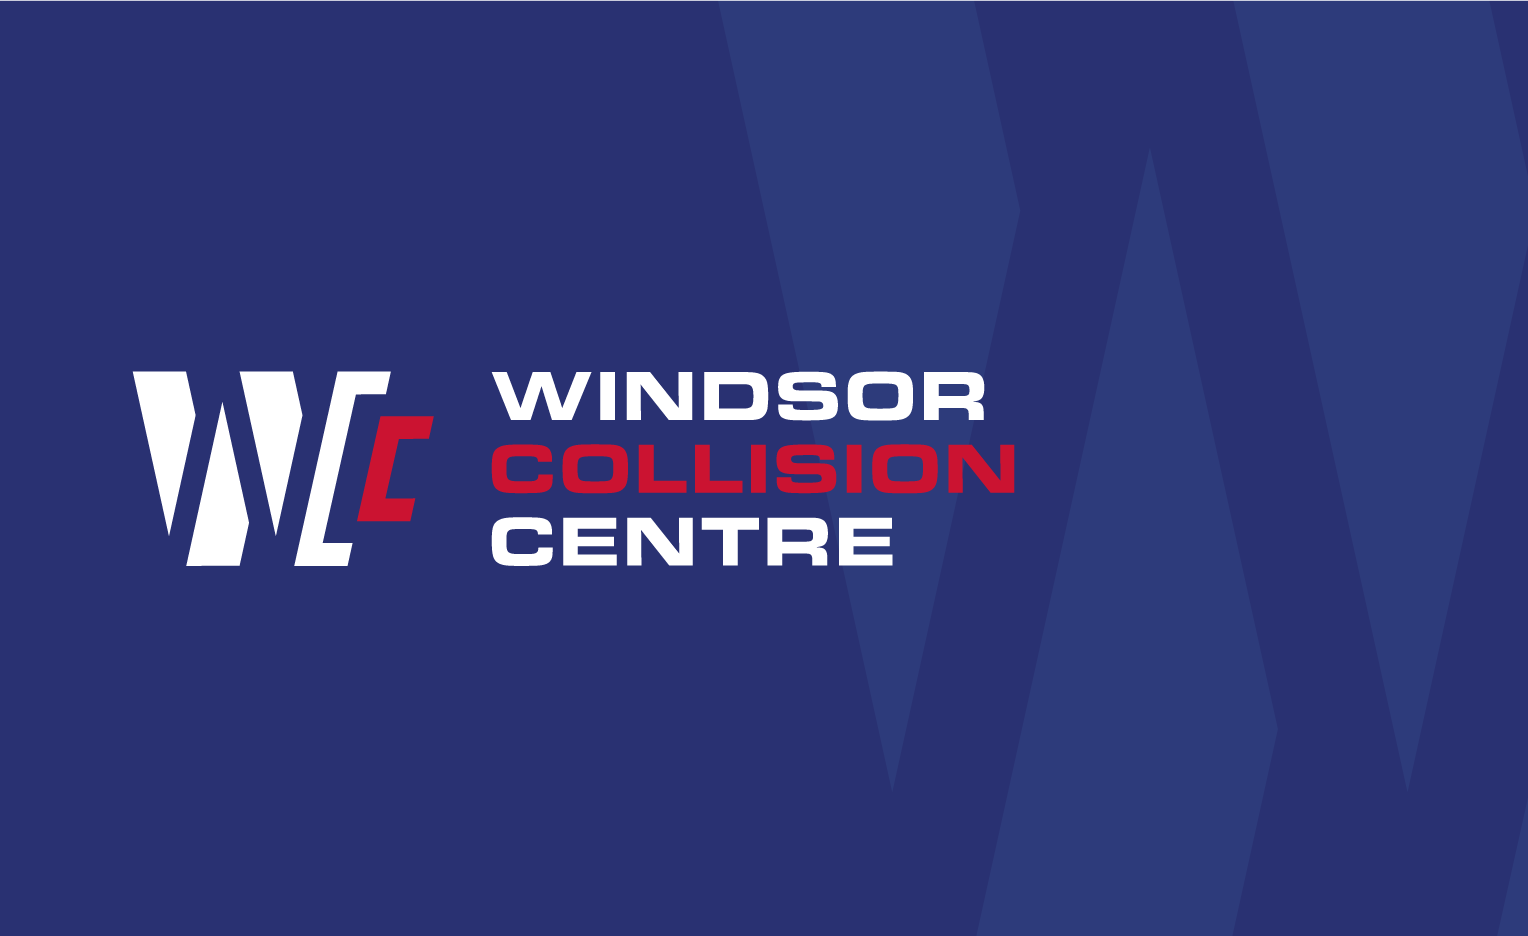 Windsor Collision Centre 5 Sanford Dr, Windsor Nova Scotia B0N 2T0